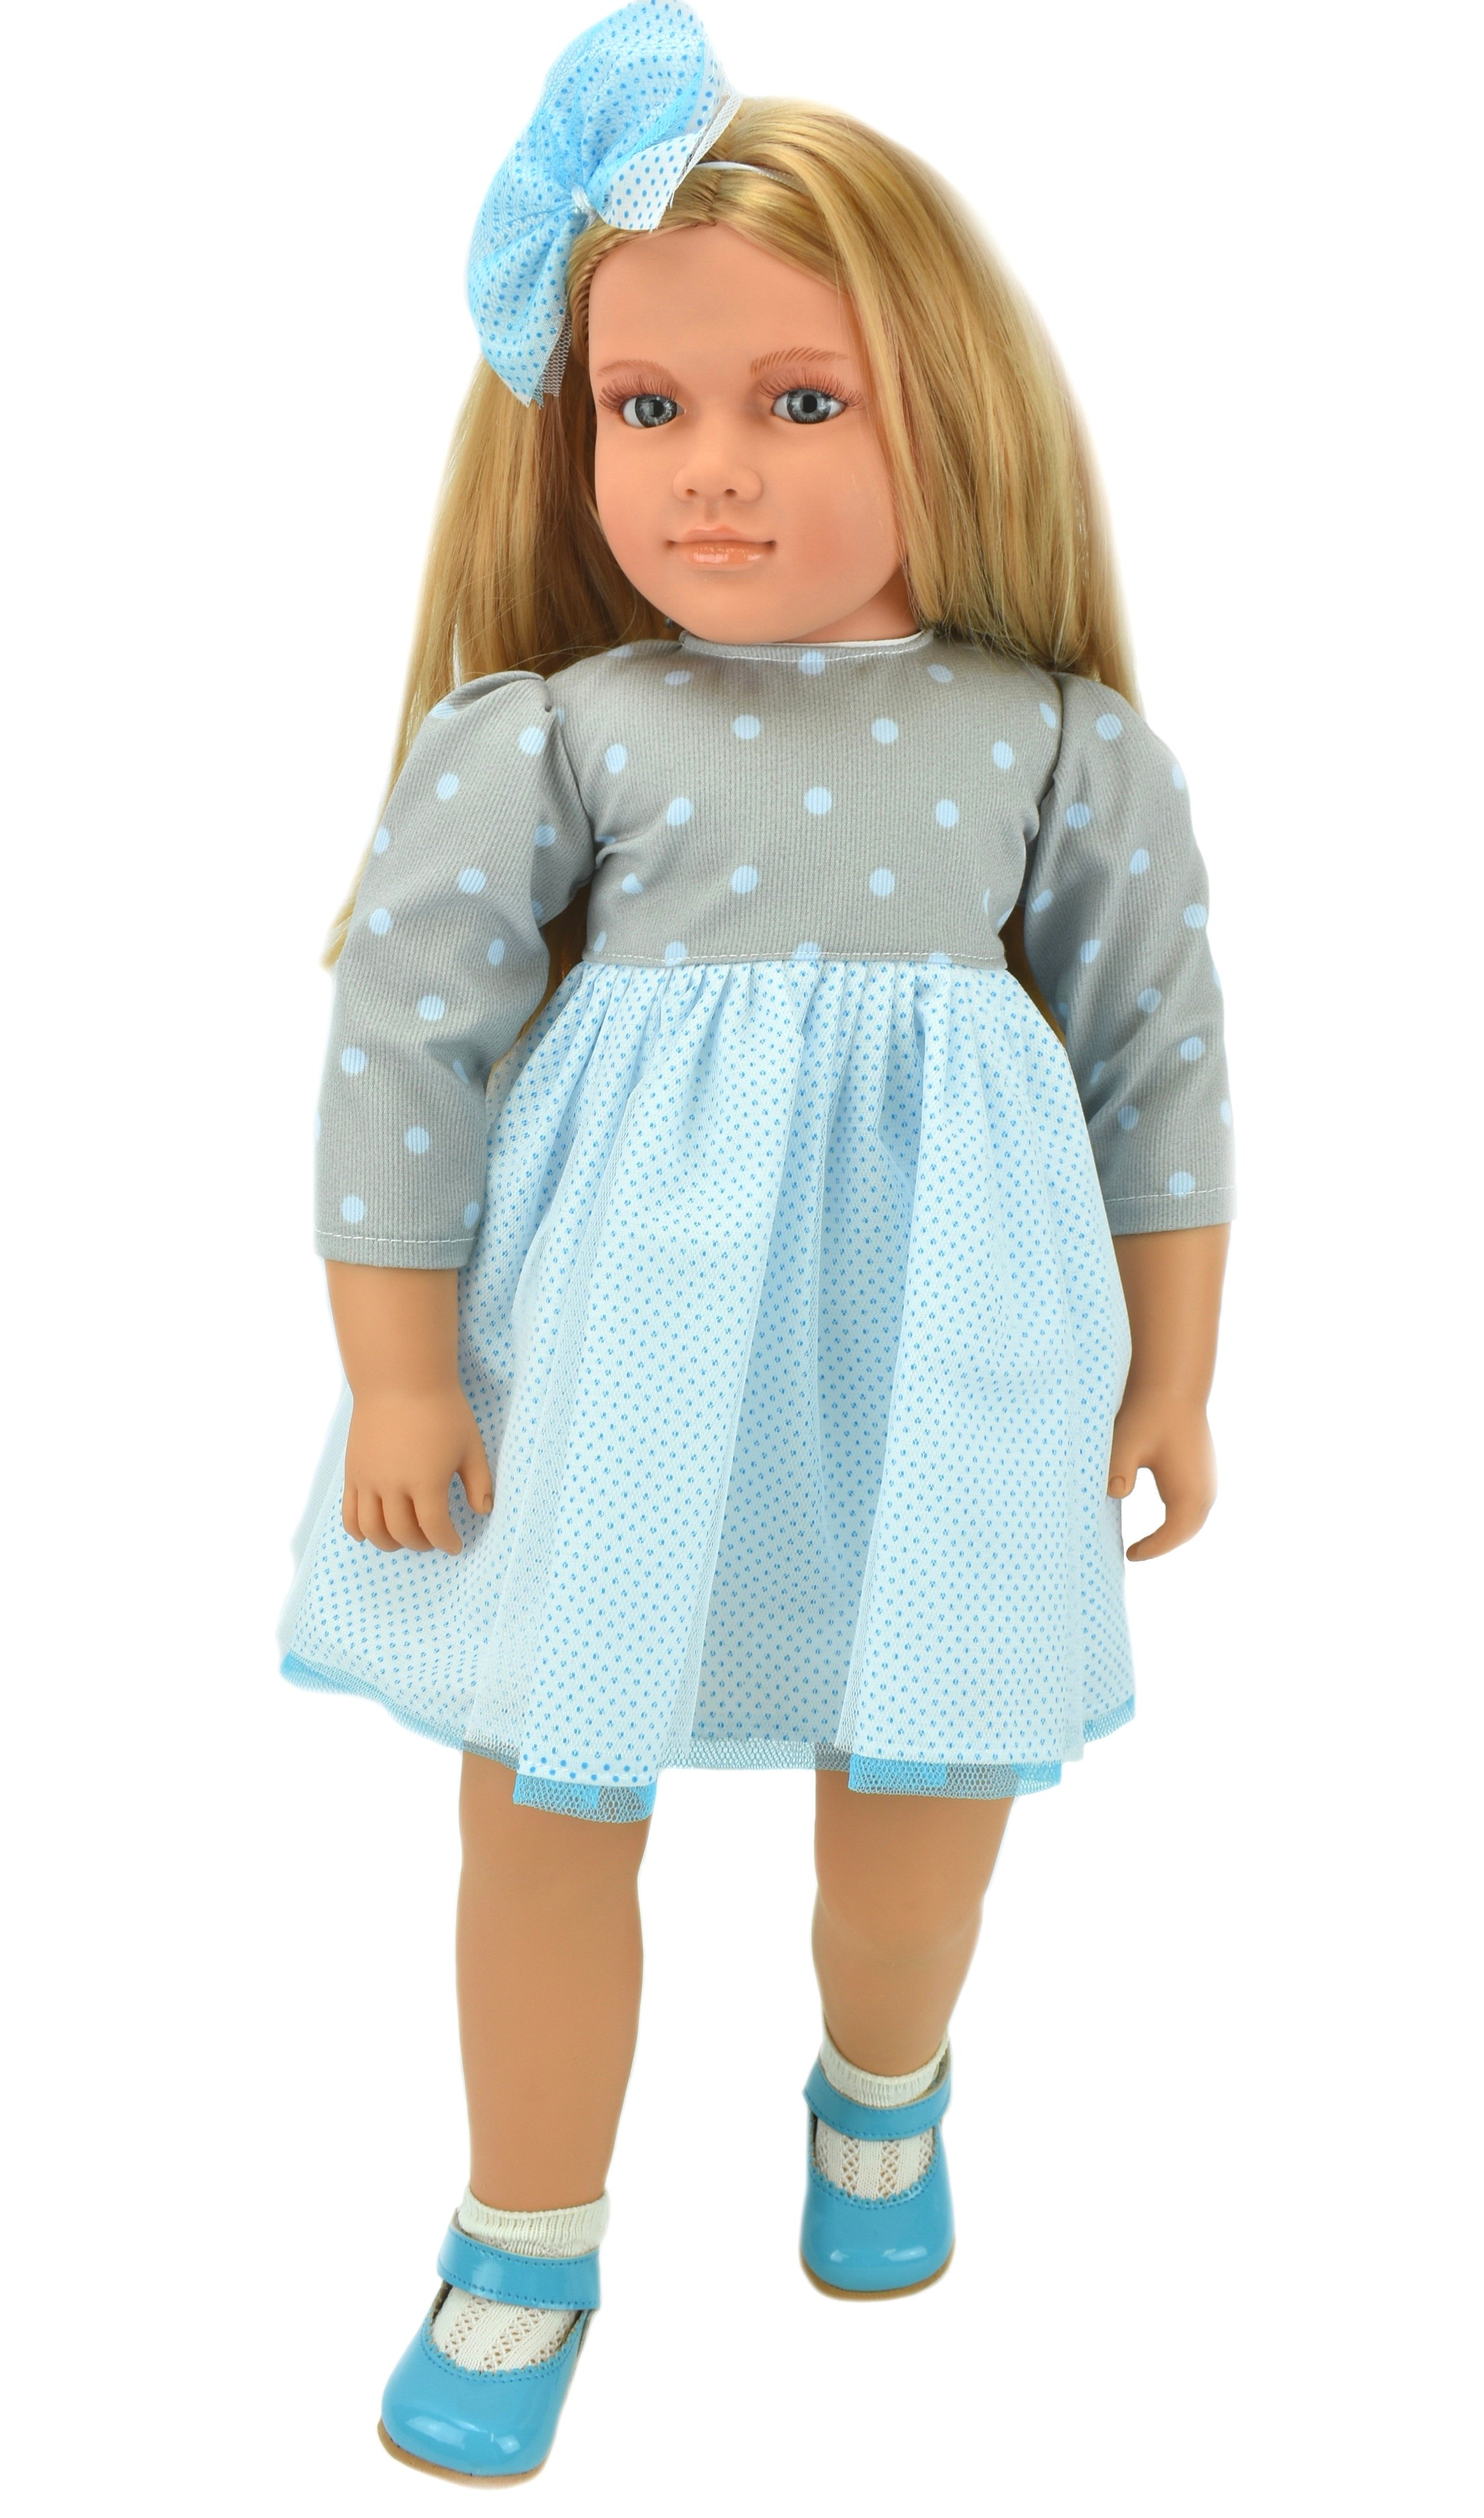 Коллекционная кукла Lamagik Ширли блондинка, в серо-белом платье в горох, 62 см, B9004